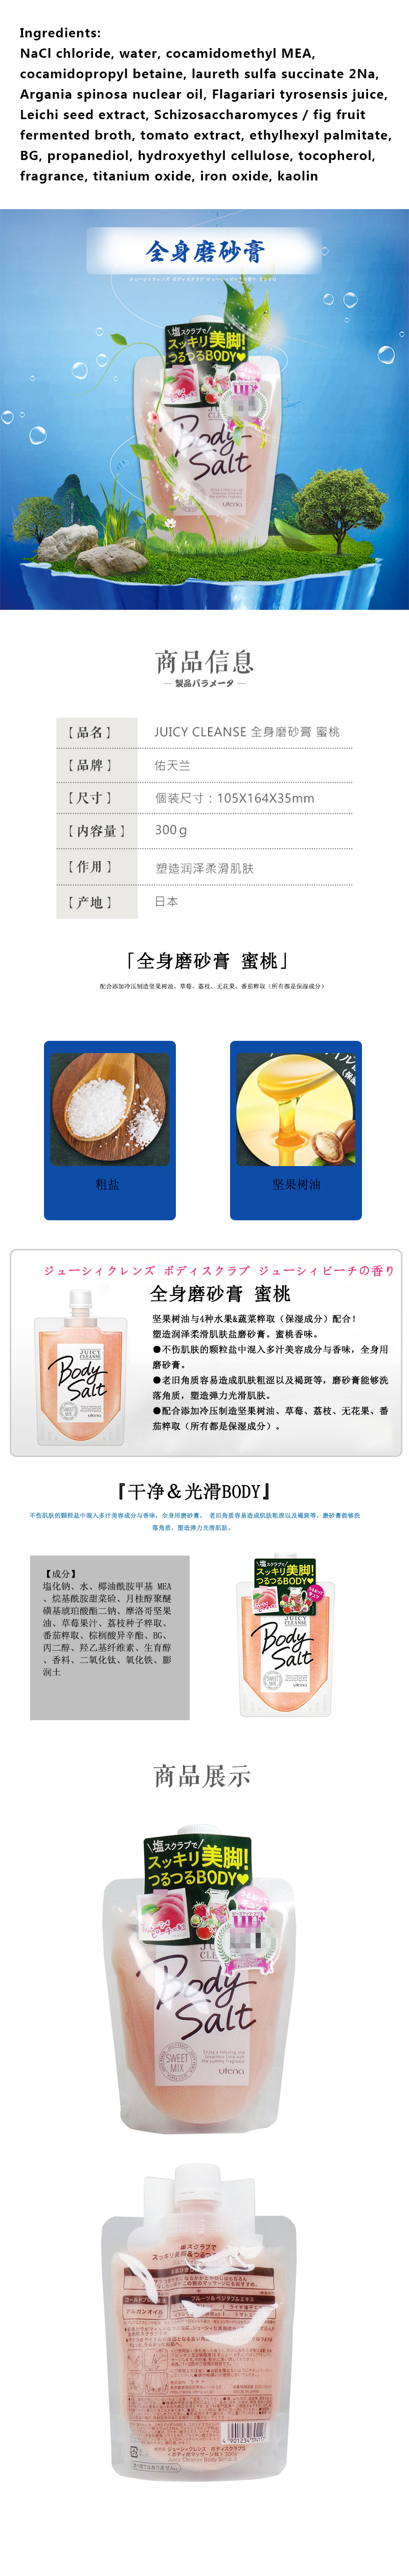 【日本直效郵件】日本佑天蘭甜莓混合身體磨砂膏300g